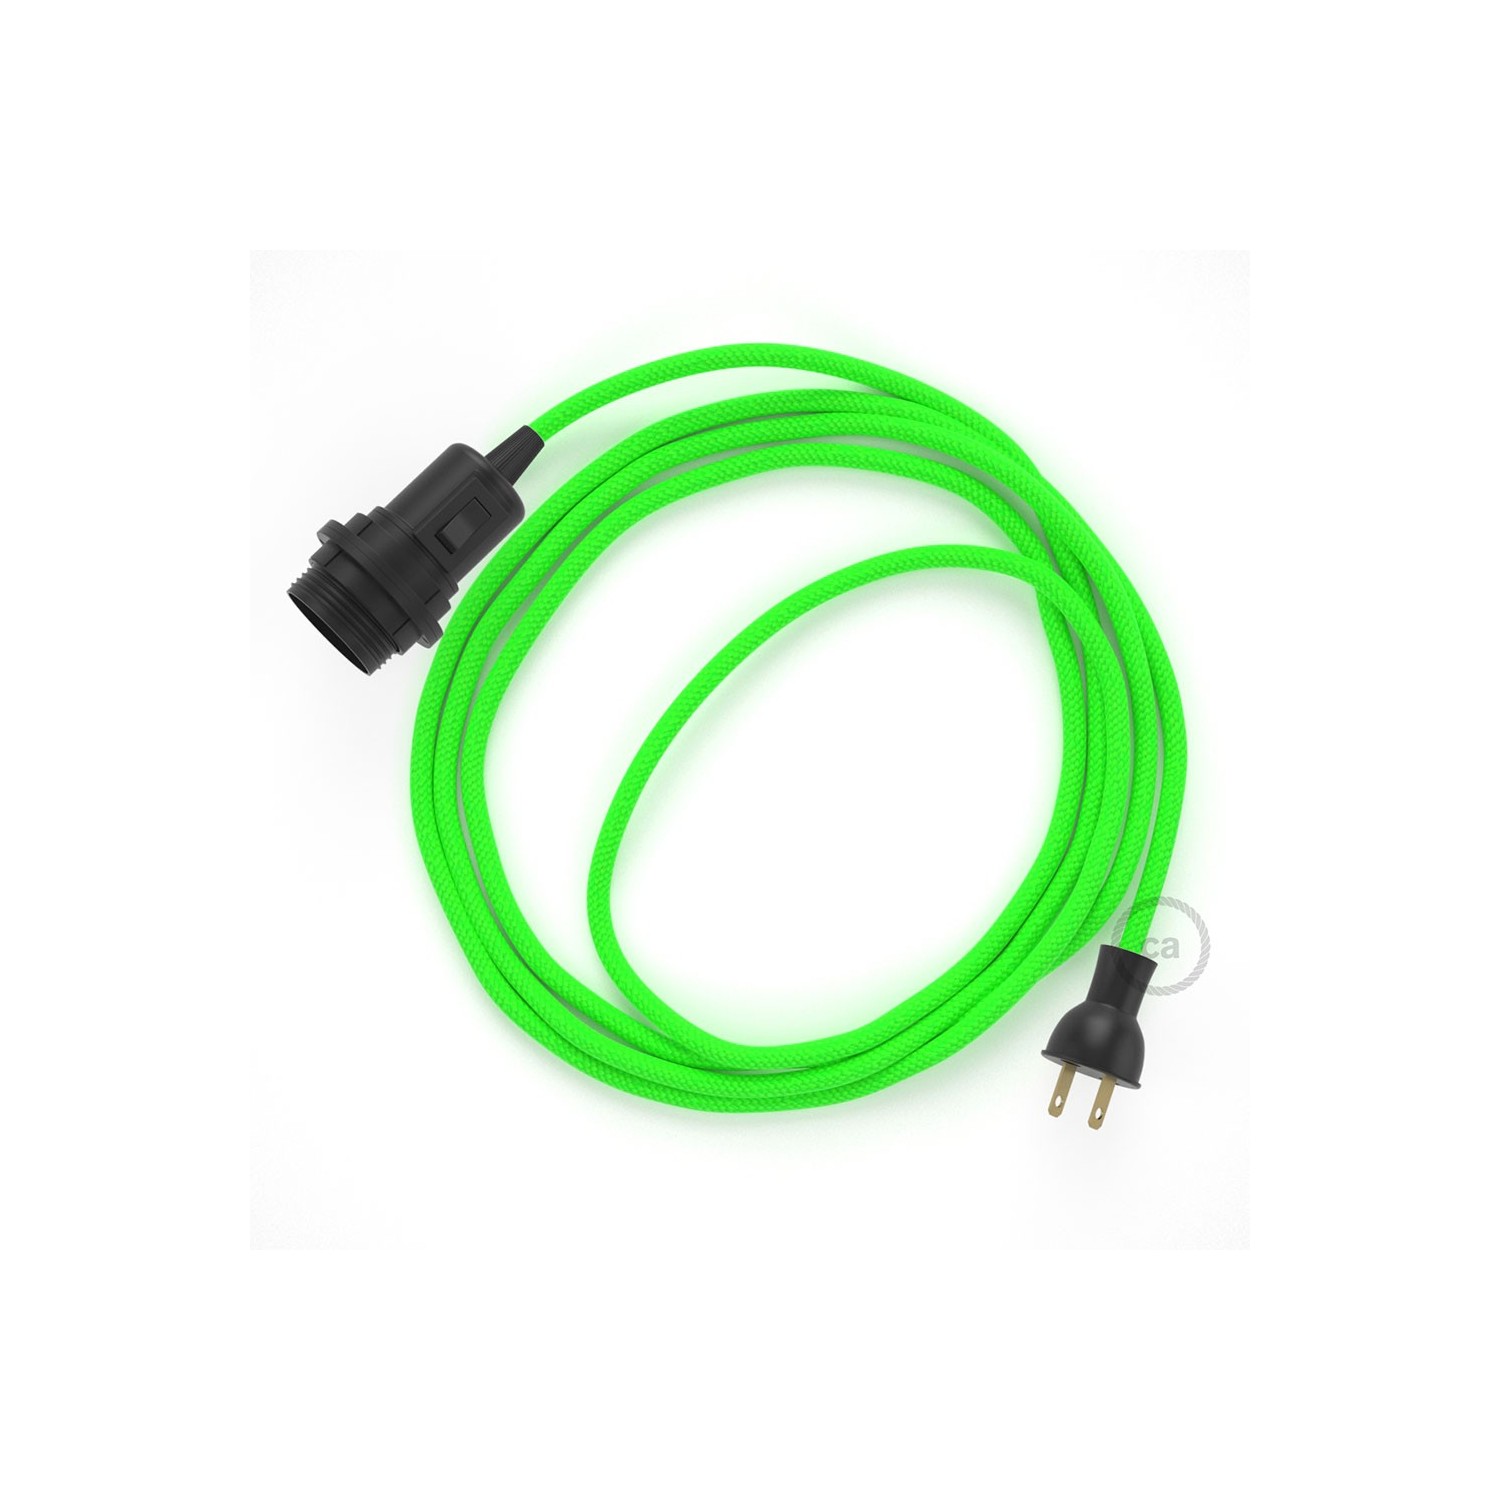 Crea tu Snake para pantalla con cable Brillante Verde RL06, socket y enchufe,  y trae la